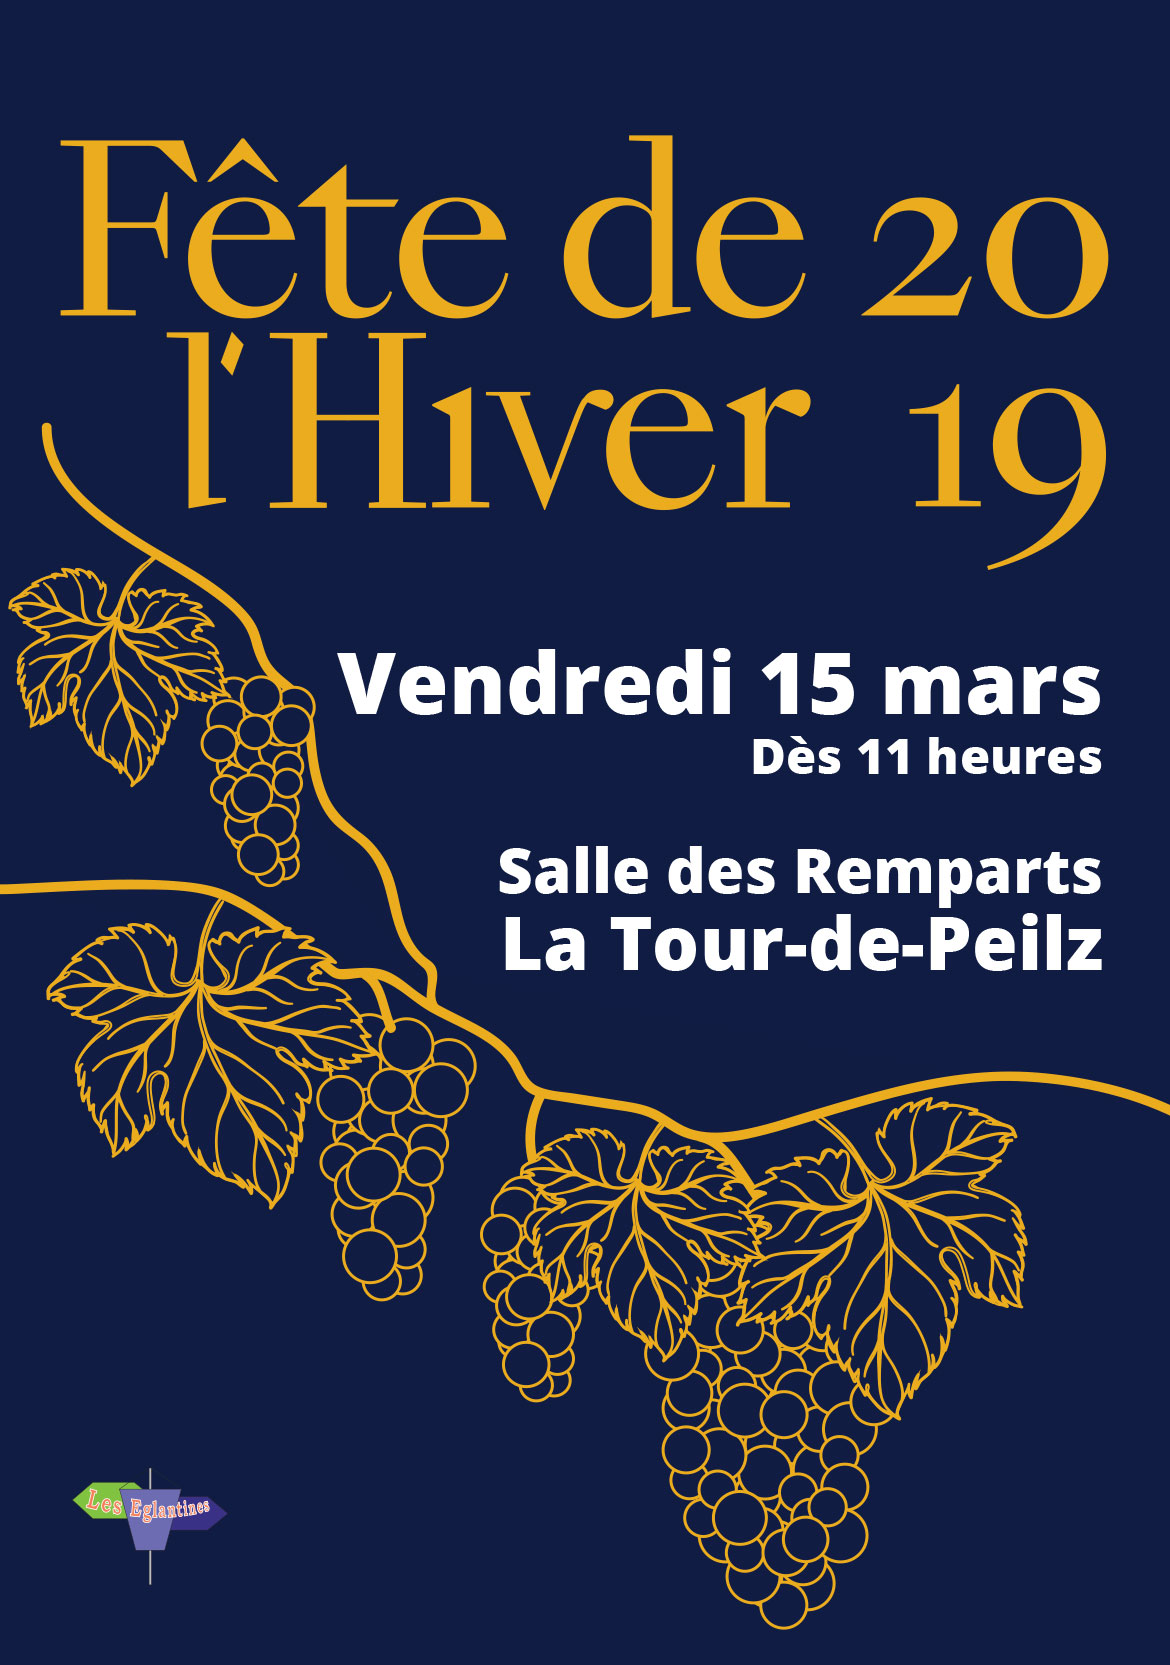 Fondation les Eglantines - Affiche Fête de l'Hiver 2019